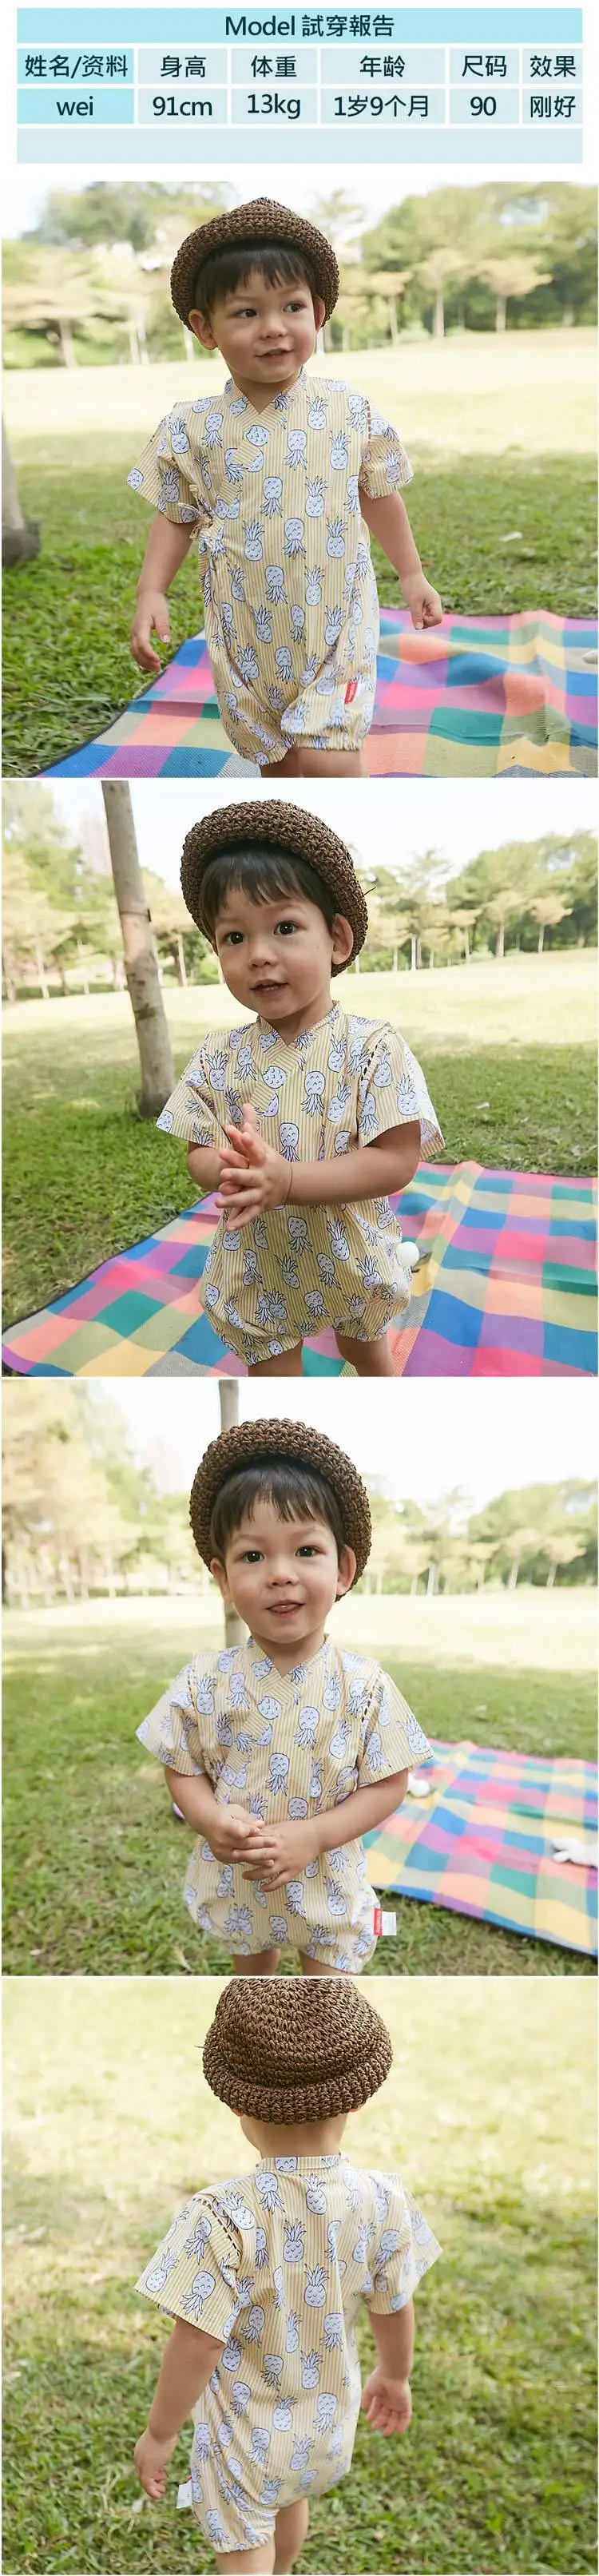 Детский летний комбинезон одежда для девочек кимоно в японском стиле bebe комбинезон Ретро Халат униформа Одежда пижамы для мальчиков Ползунки